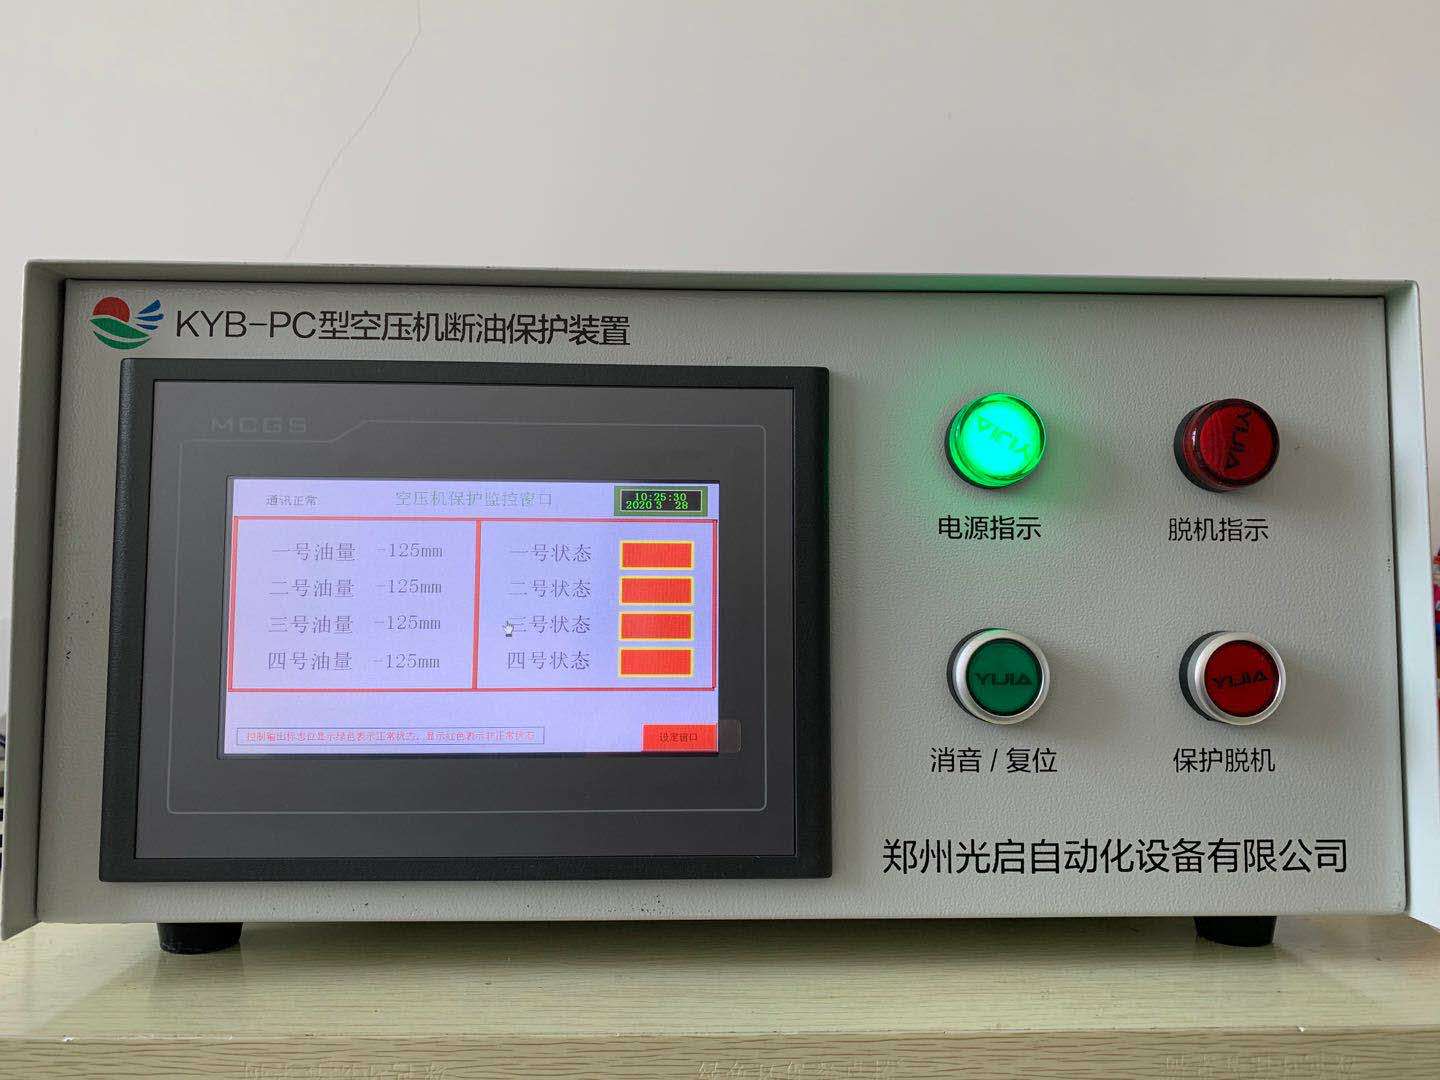 煤矿化工电子厂KPZJ-PC型皮带机远程在线监控系统河南光启